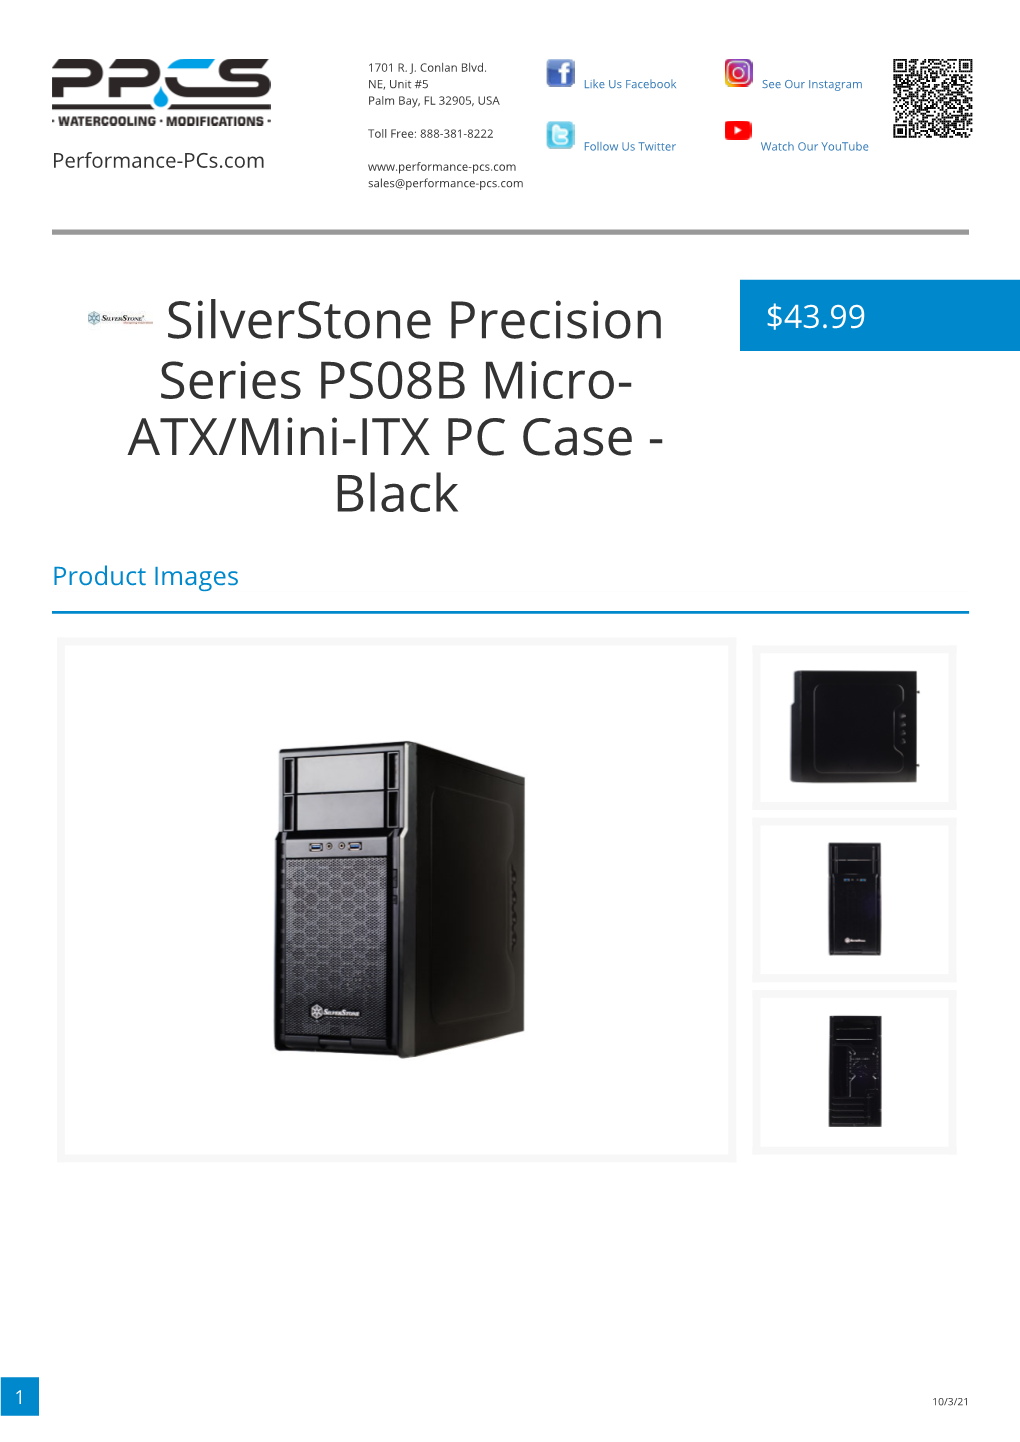 Silverstone Precision Series PS08B Micro-ATX/Mini-ITX PC Case